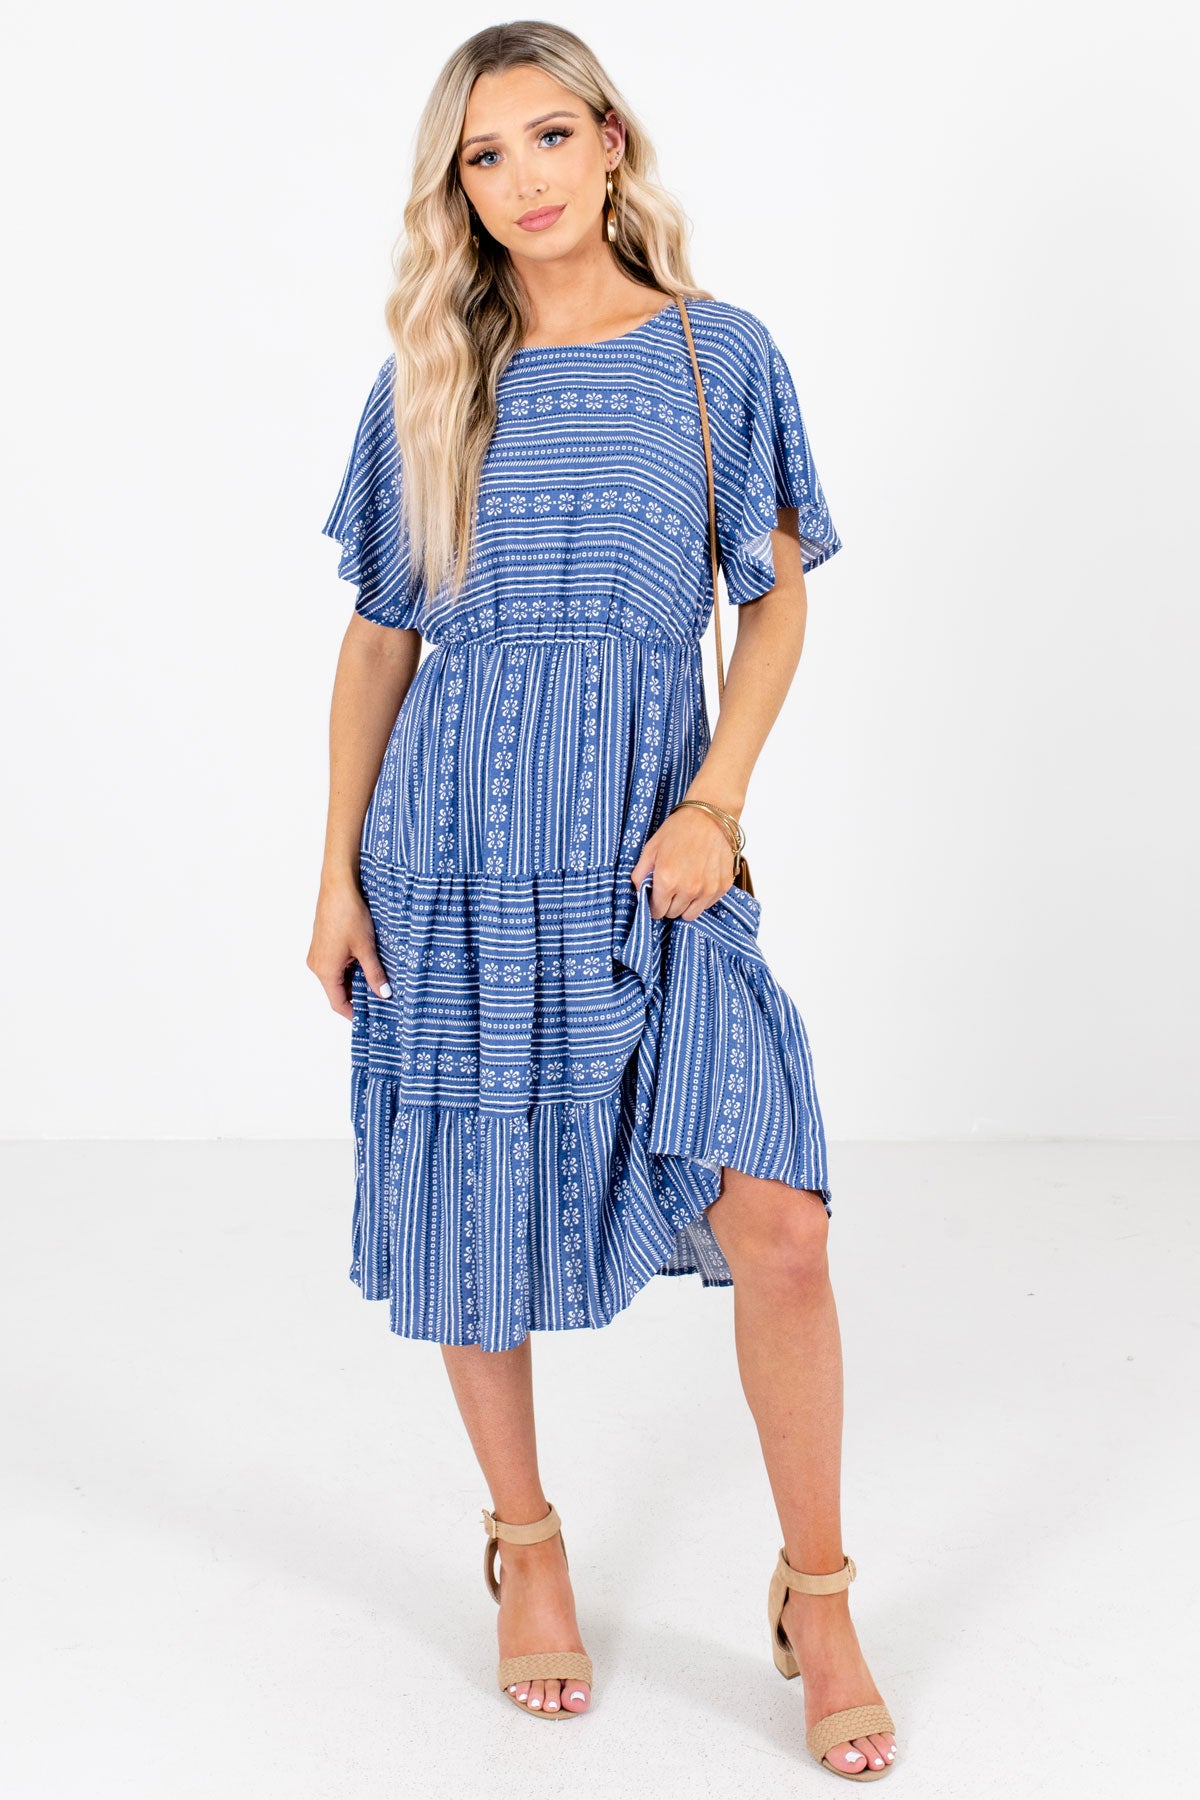 When in Greece Blue Patterned Knee-Length Dress | Boutique - Bella Ella ...